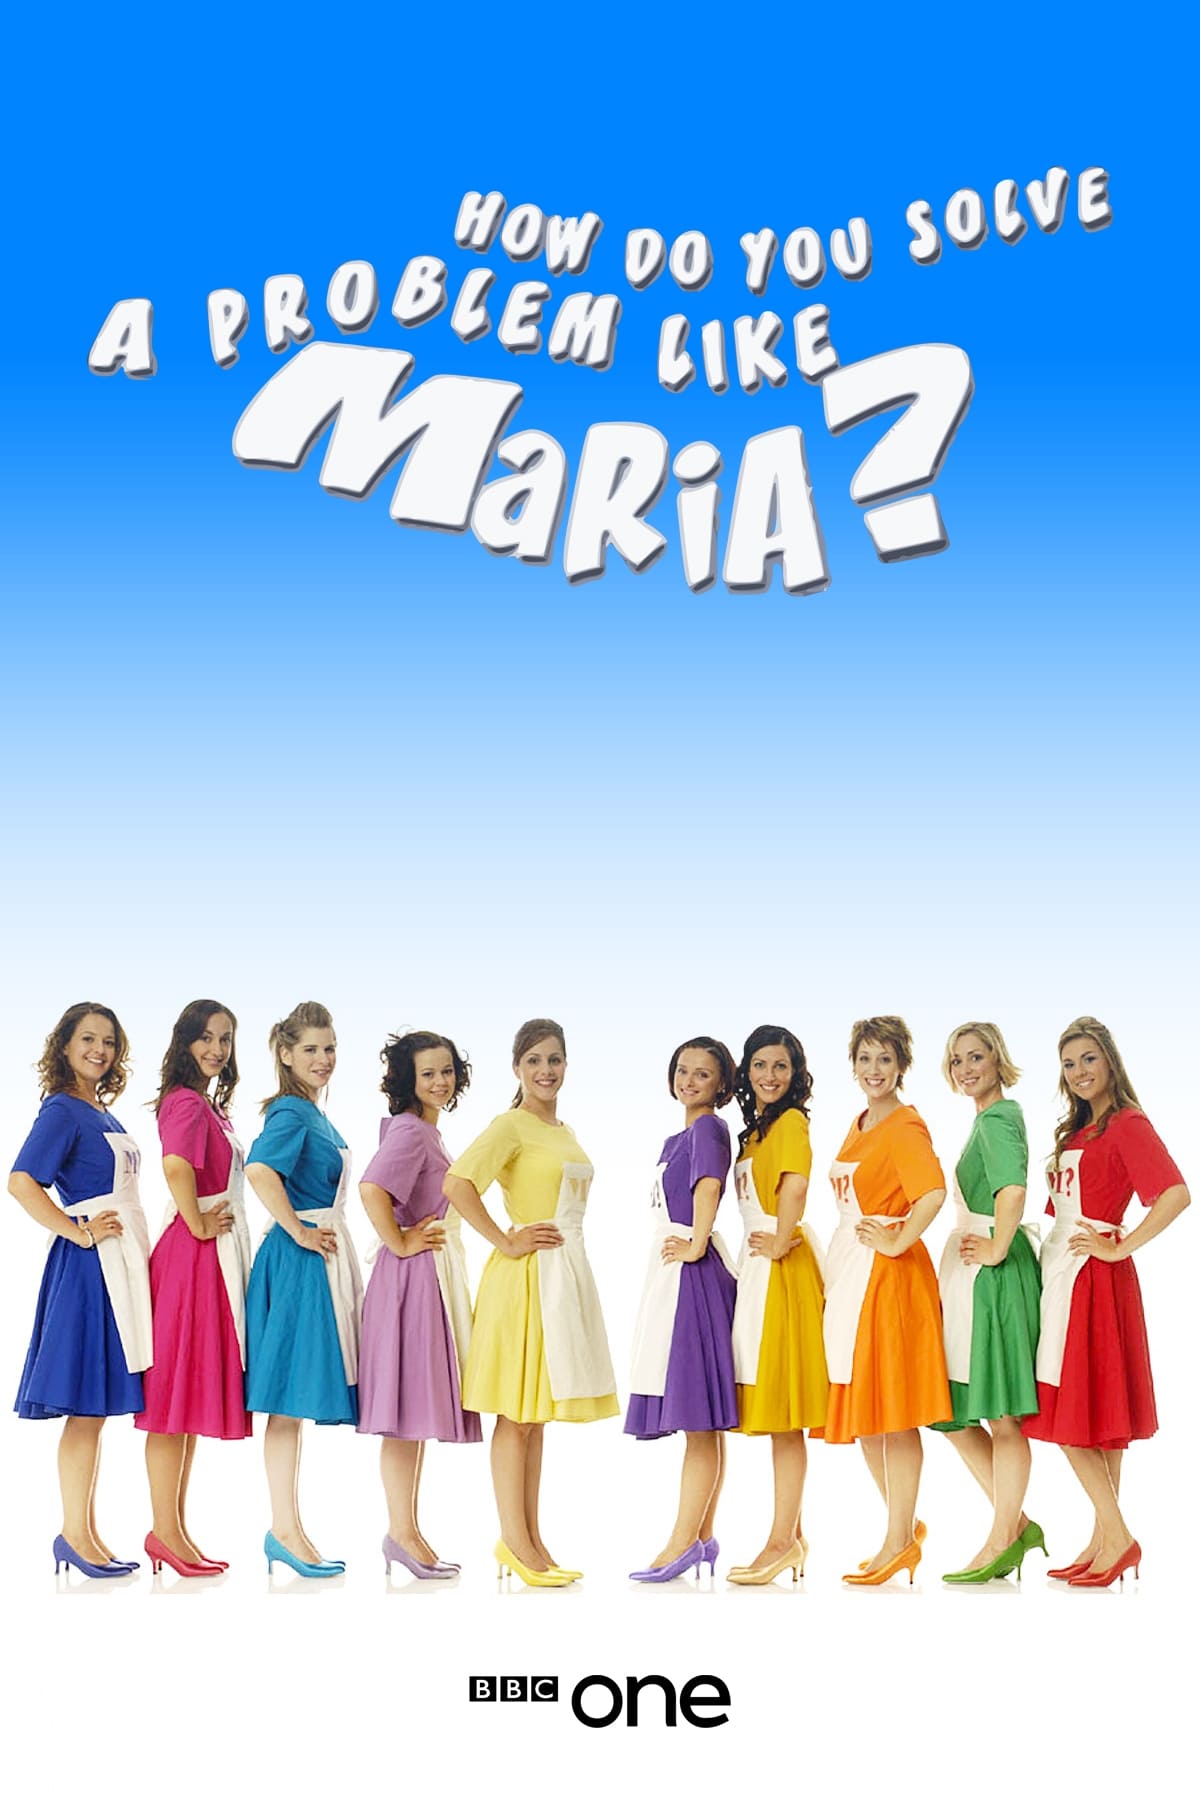 how do you solve problem like maria